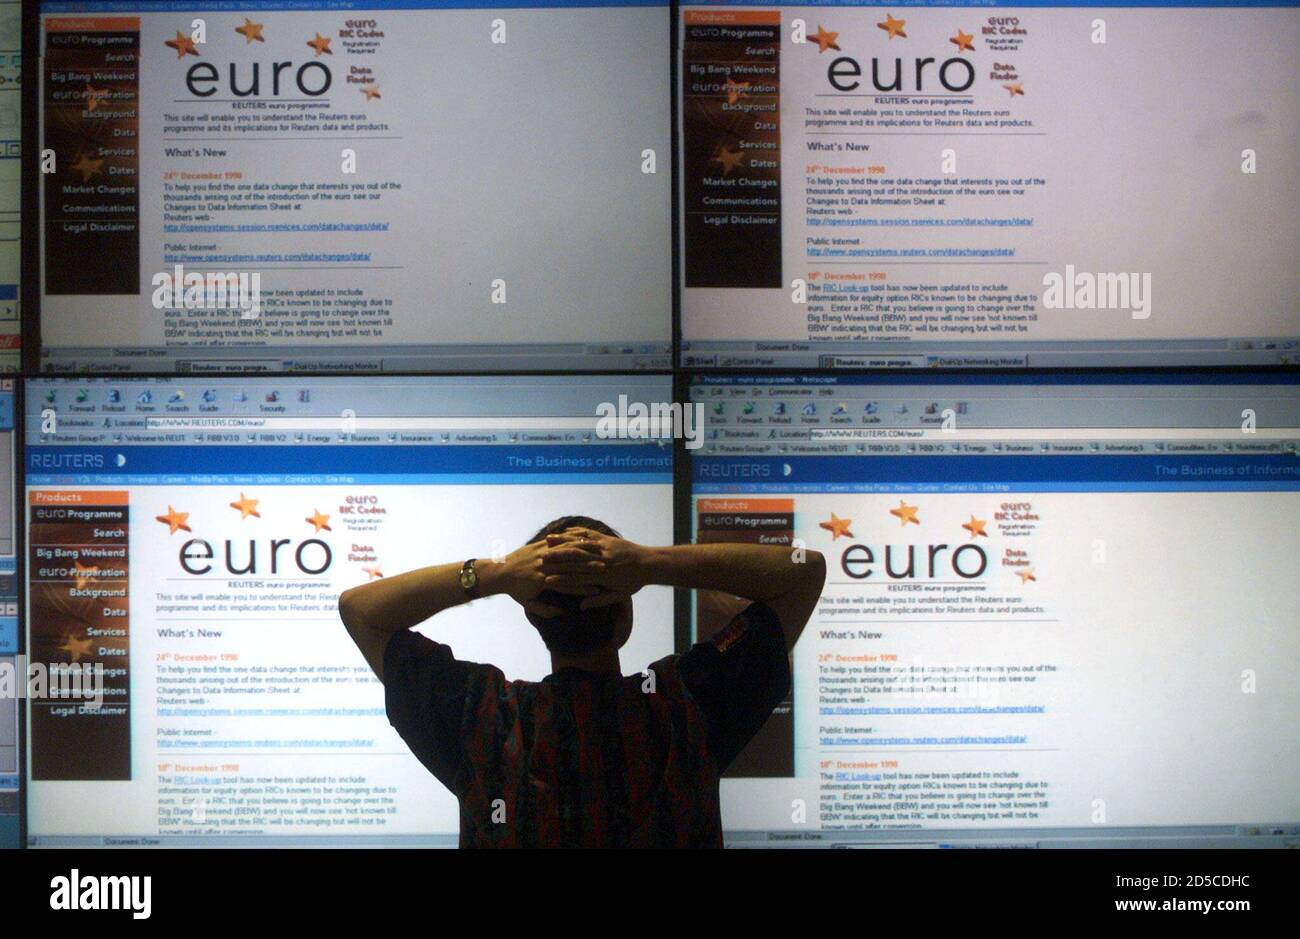 Ein Controller im Reuters Global Network Control Center schaut auf riesige Bildschirme mit Informationen über den Euro 3. Januar. Auf der ganzen Welt bereiten sich die Handelsräume auf die Einführung des Euro morgen vor. RUS/NS Stockfoto